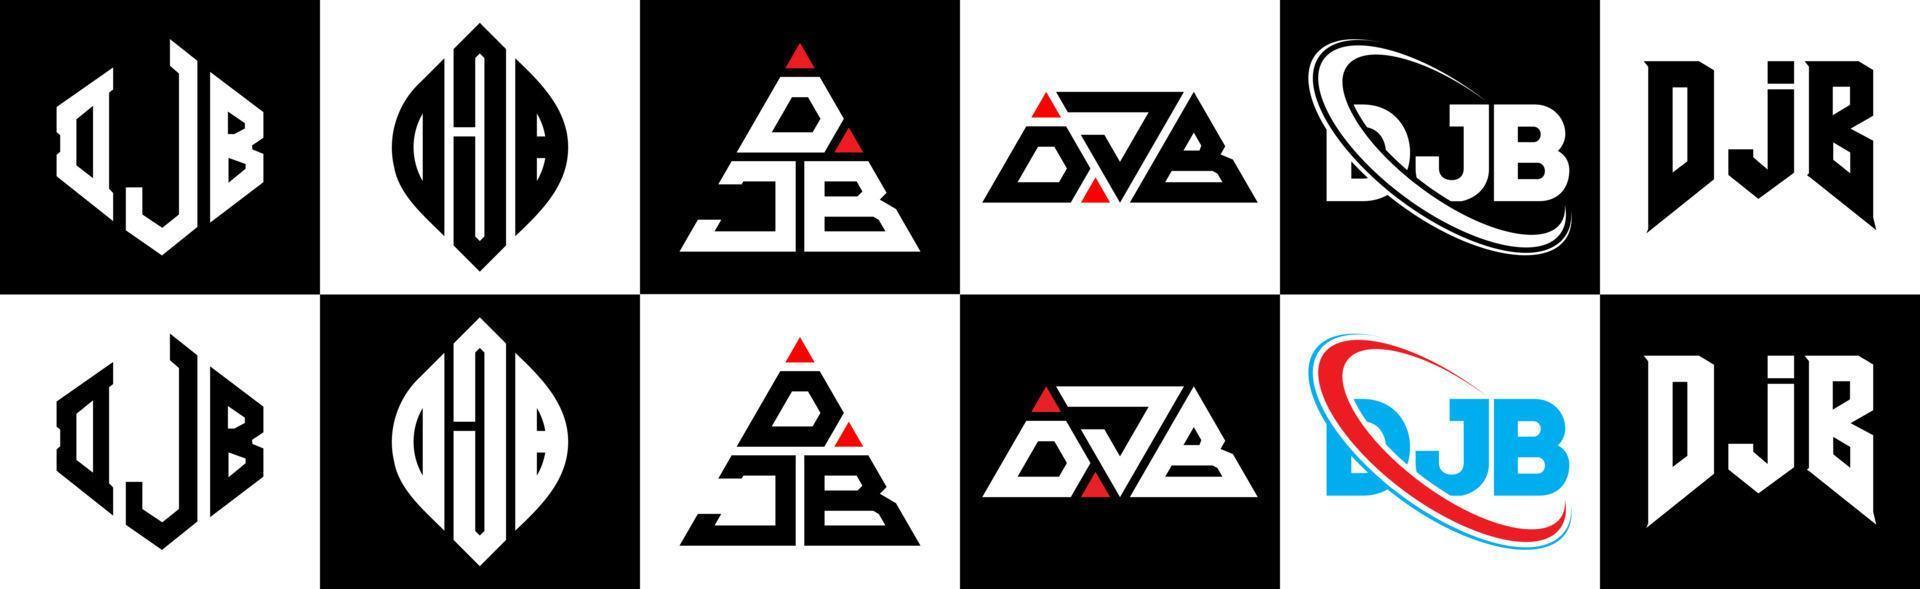 création de logo de lettre djb en six styles. djb polygone, cercle, triangle, hexagone, style plat et simple avec logo de lettre de variation de couleur noir et blanc dans un plan de travail. logo djb minimaliste et classique vecteur